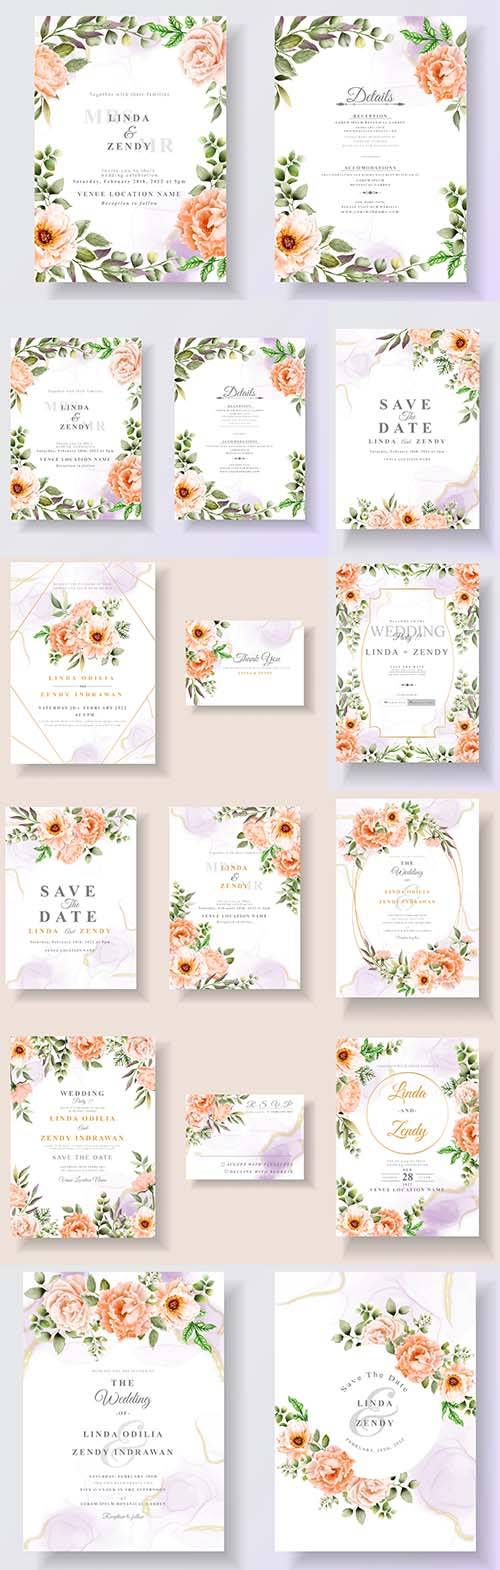 Векторные открытки, приглашения с цветами для свадебных торжеств